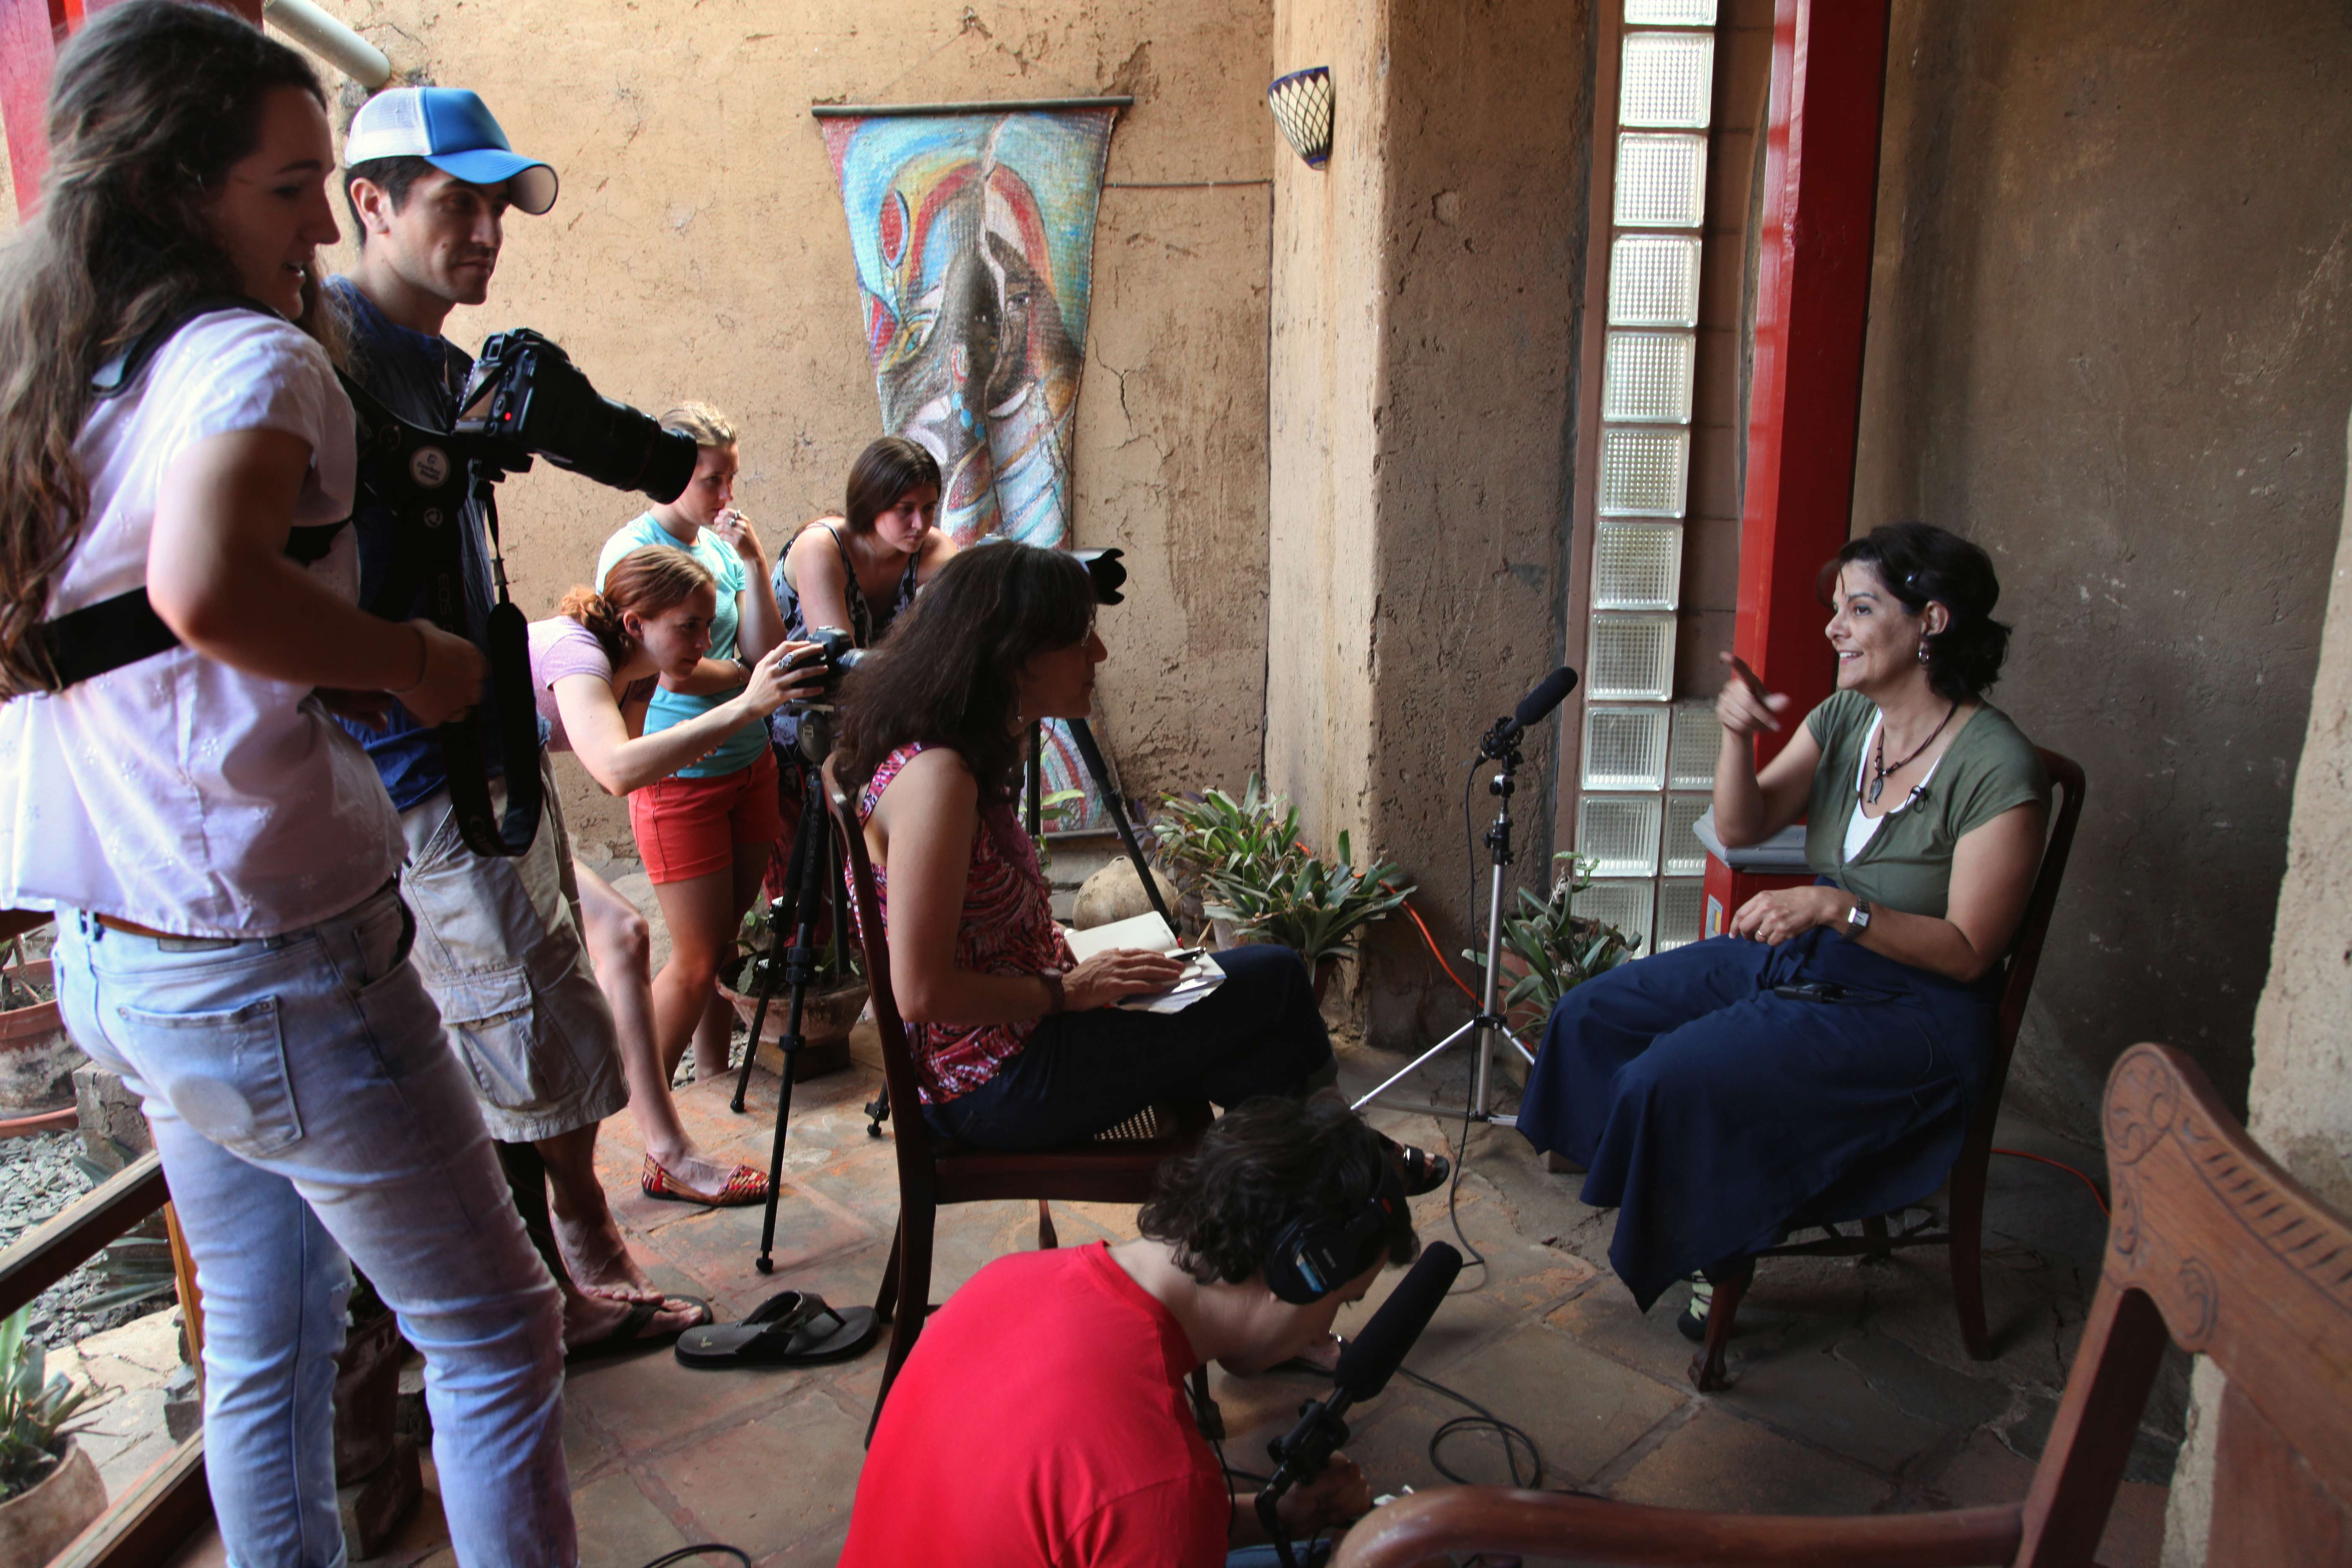 Muriel Hasbun received the 2014 Howard Chapnick grant. Above, Corcoran students and Muriel Hasbun interview Beatriz Deleón about galería el laberinto in El Congo, El Salvado. ©Susan Sterner